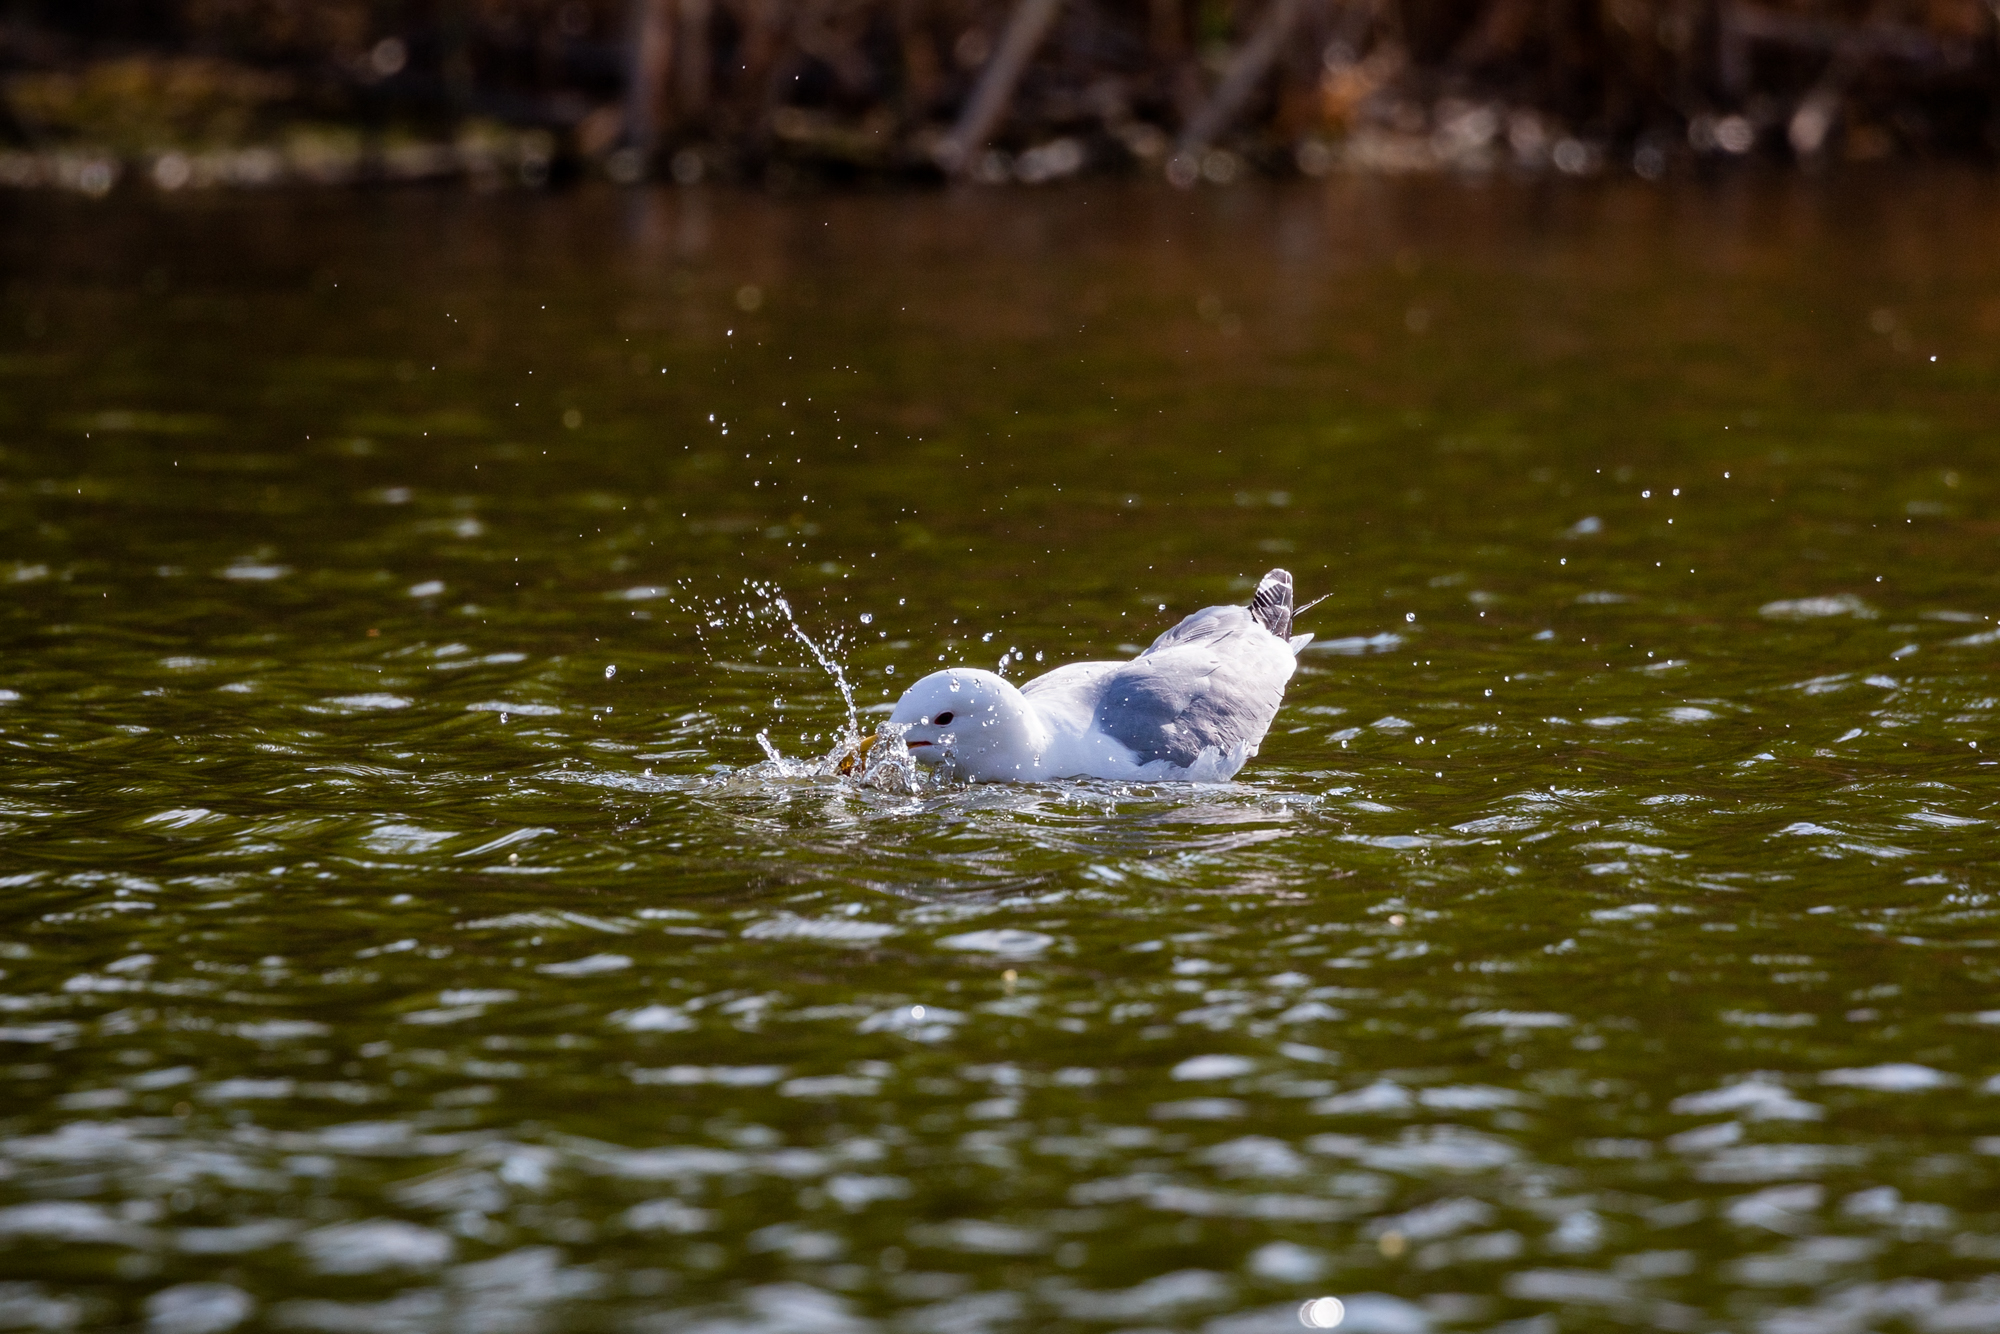 California Gull splashing in the water